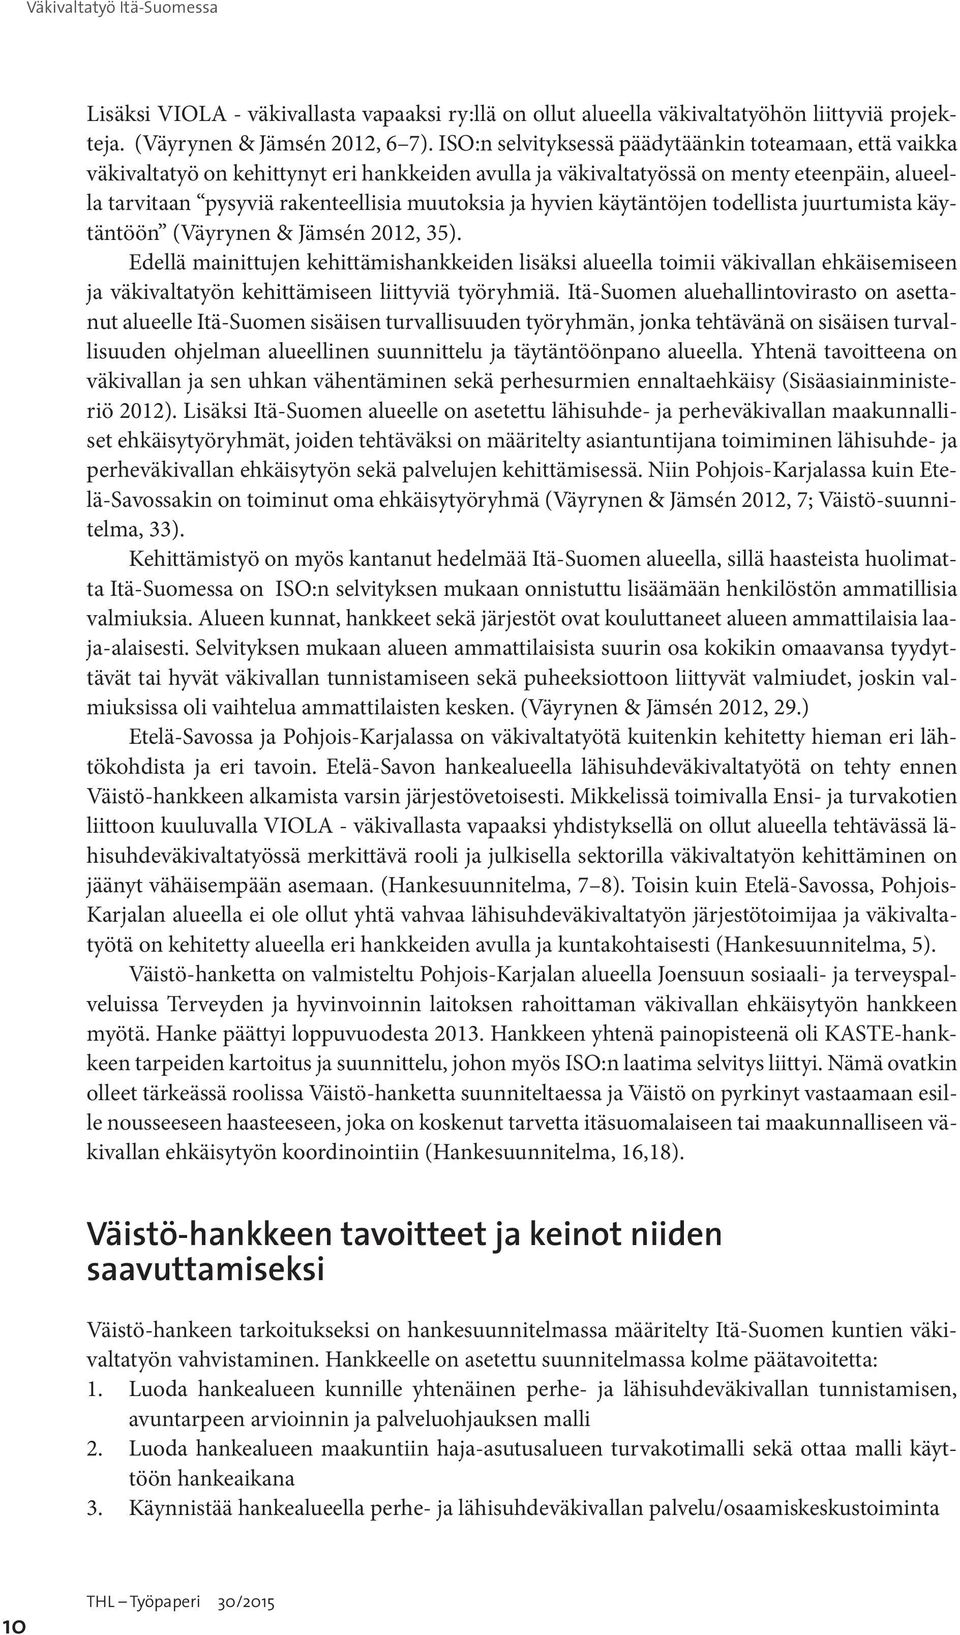 hyvien käytäntöjen todellista juurtumista käytäntöön (Väyrynen & Jämsén 2012, 35).